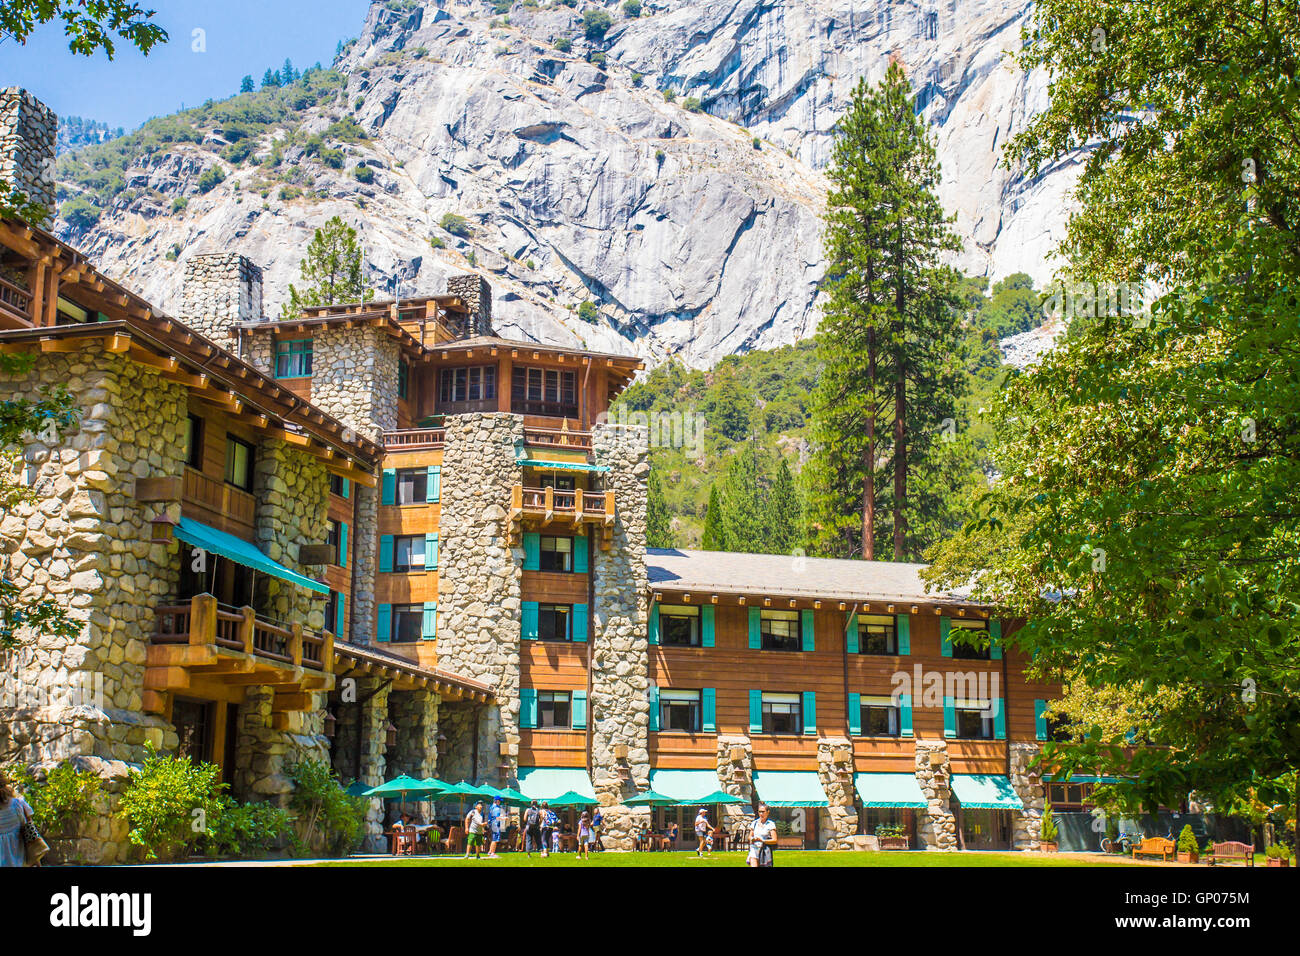 YOSEMITE NATIONAL PARK, Californie - 3 août, 2016 : voir l'historique de l'hôtel Yosemite majestueux, anciennement connu sous le nom de Ahwahnee Hotel à Yosem Banque D'Images